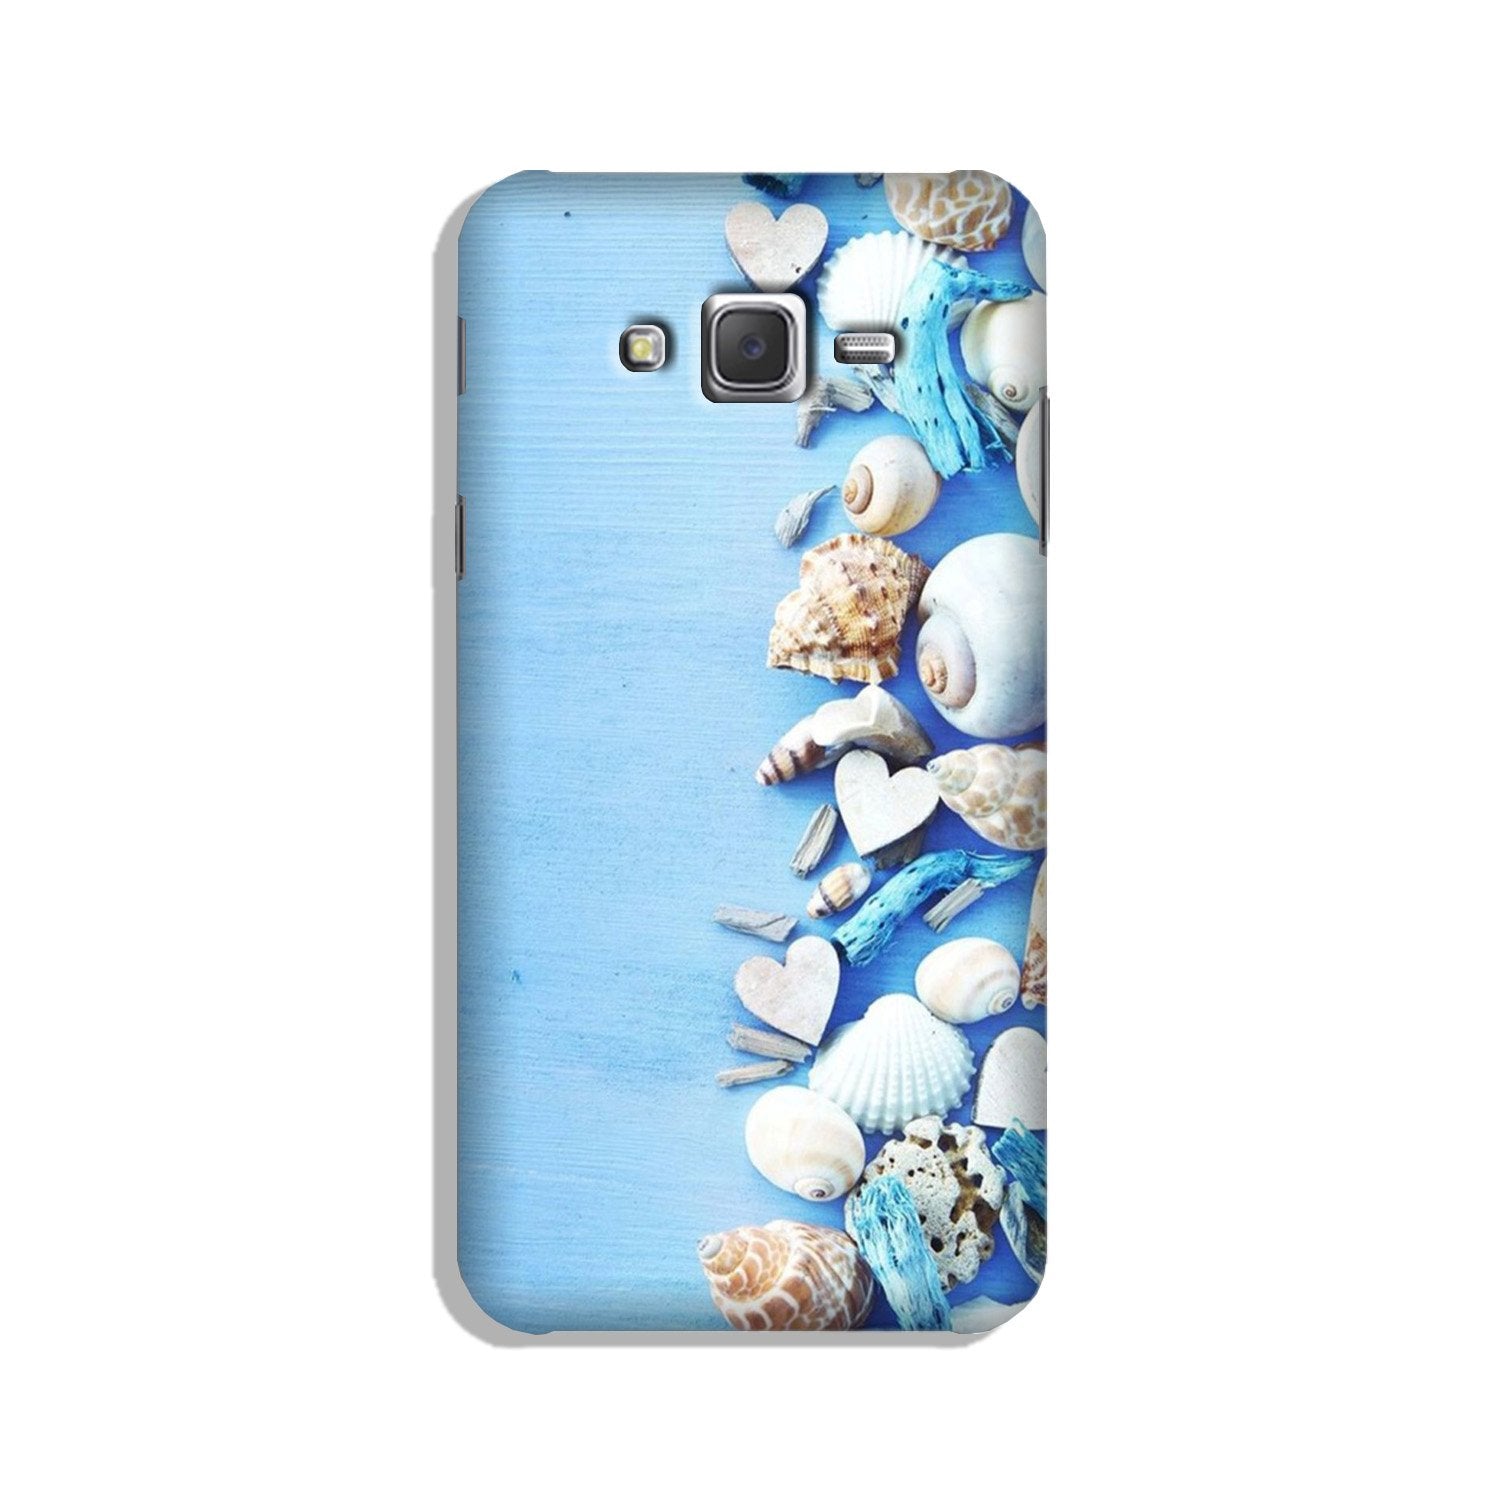 Sea Shells2 Case for Galaxy J3 (2015)